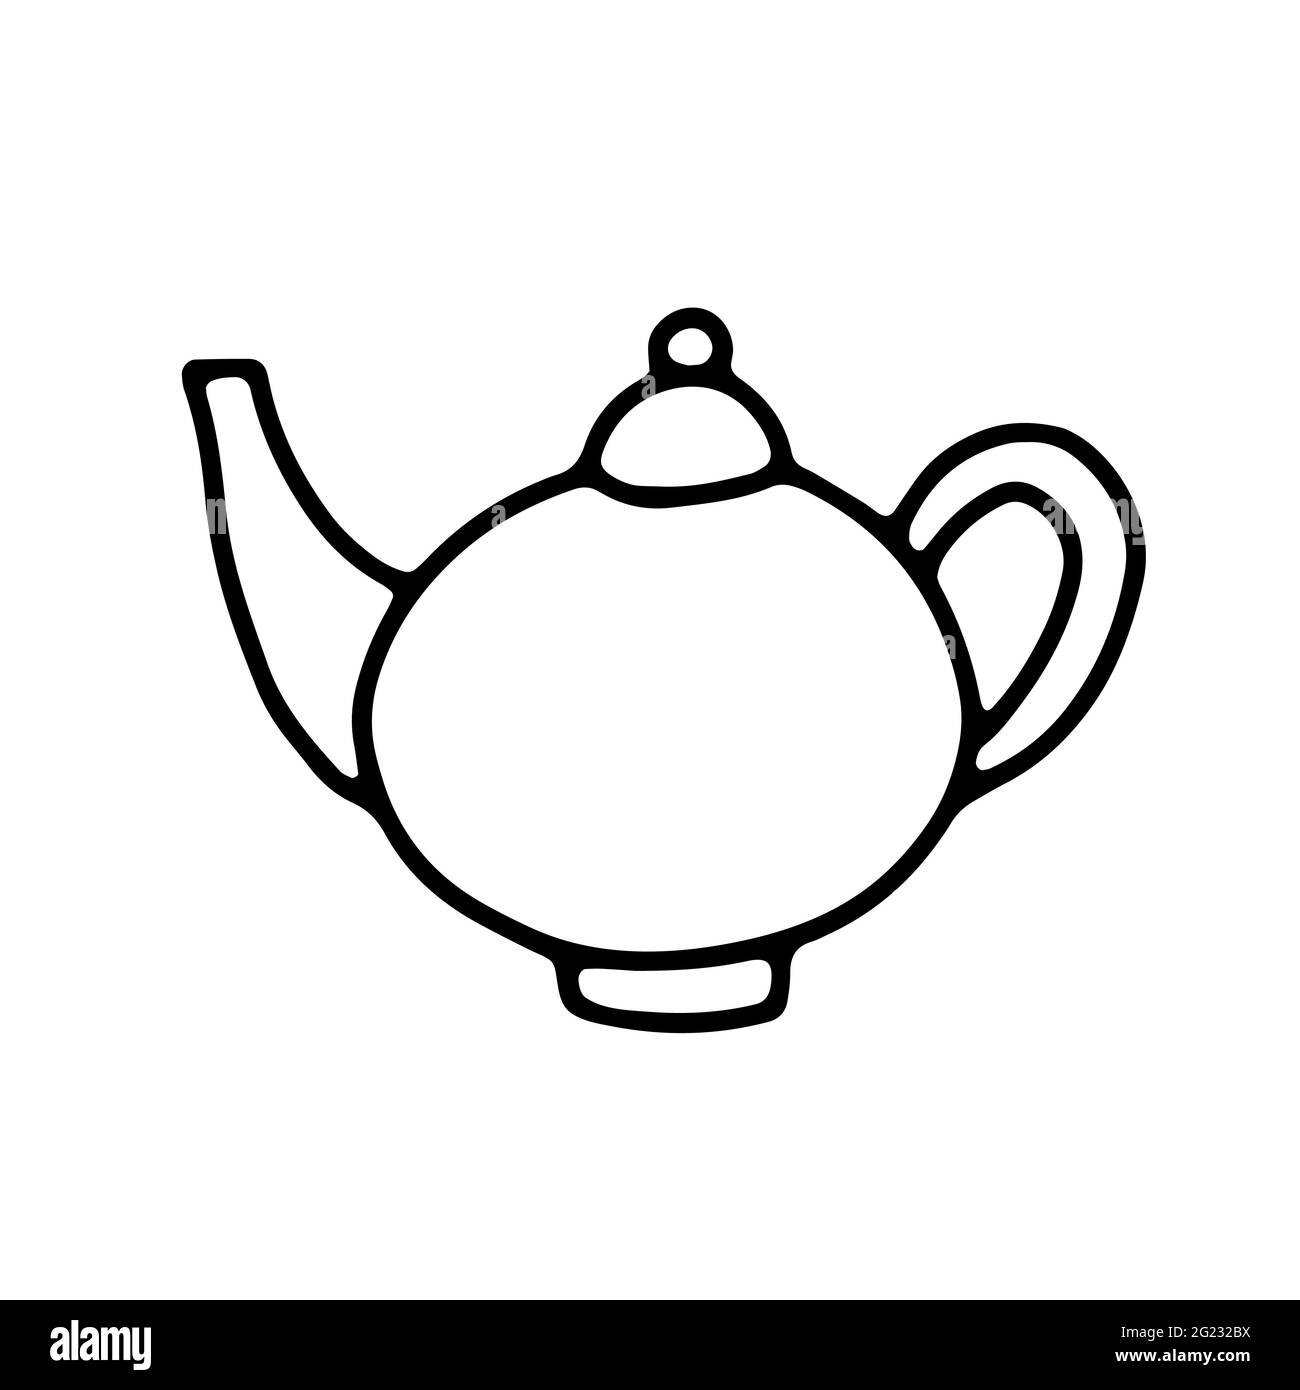 Doodle traditionelle handgezeichnete Teekannen. Umreißen Sie den Wasserkocher isoliert auf weißem Hintergrund. Gemütliche Küchenutensilien, niedliche Küchenutensilien, Geschirr für Tee, Kaffee, dr Stock Vektor